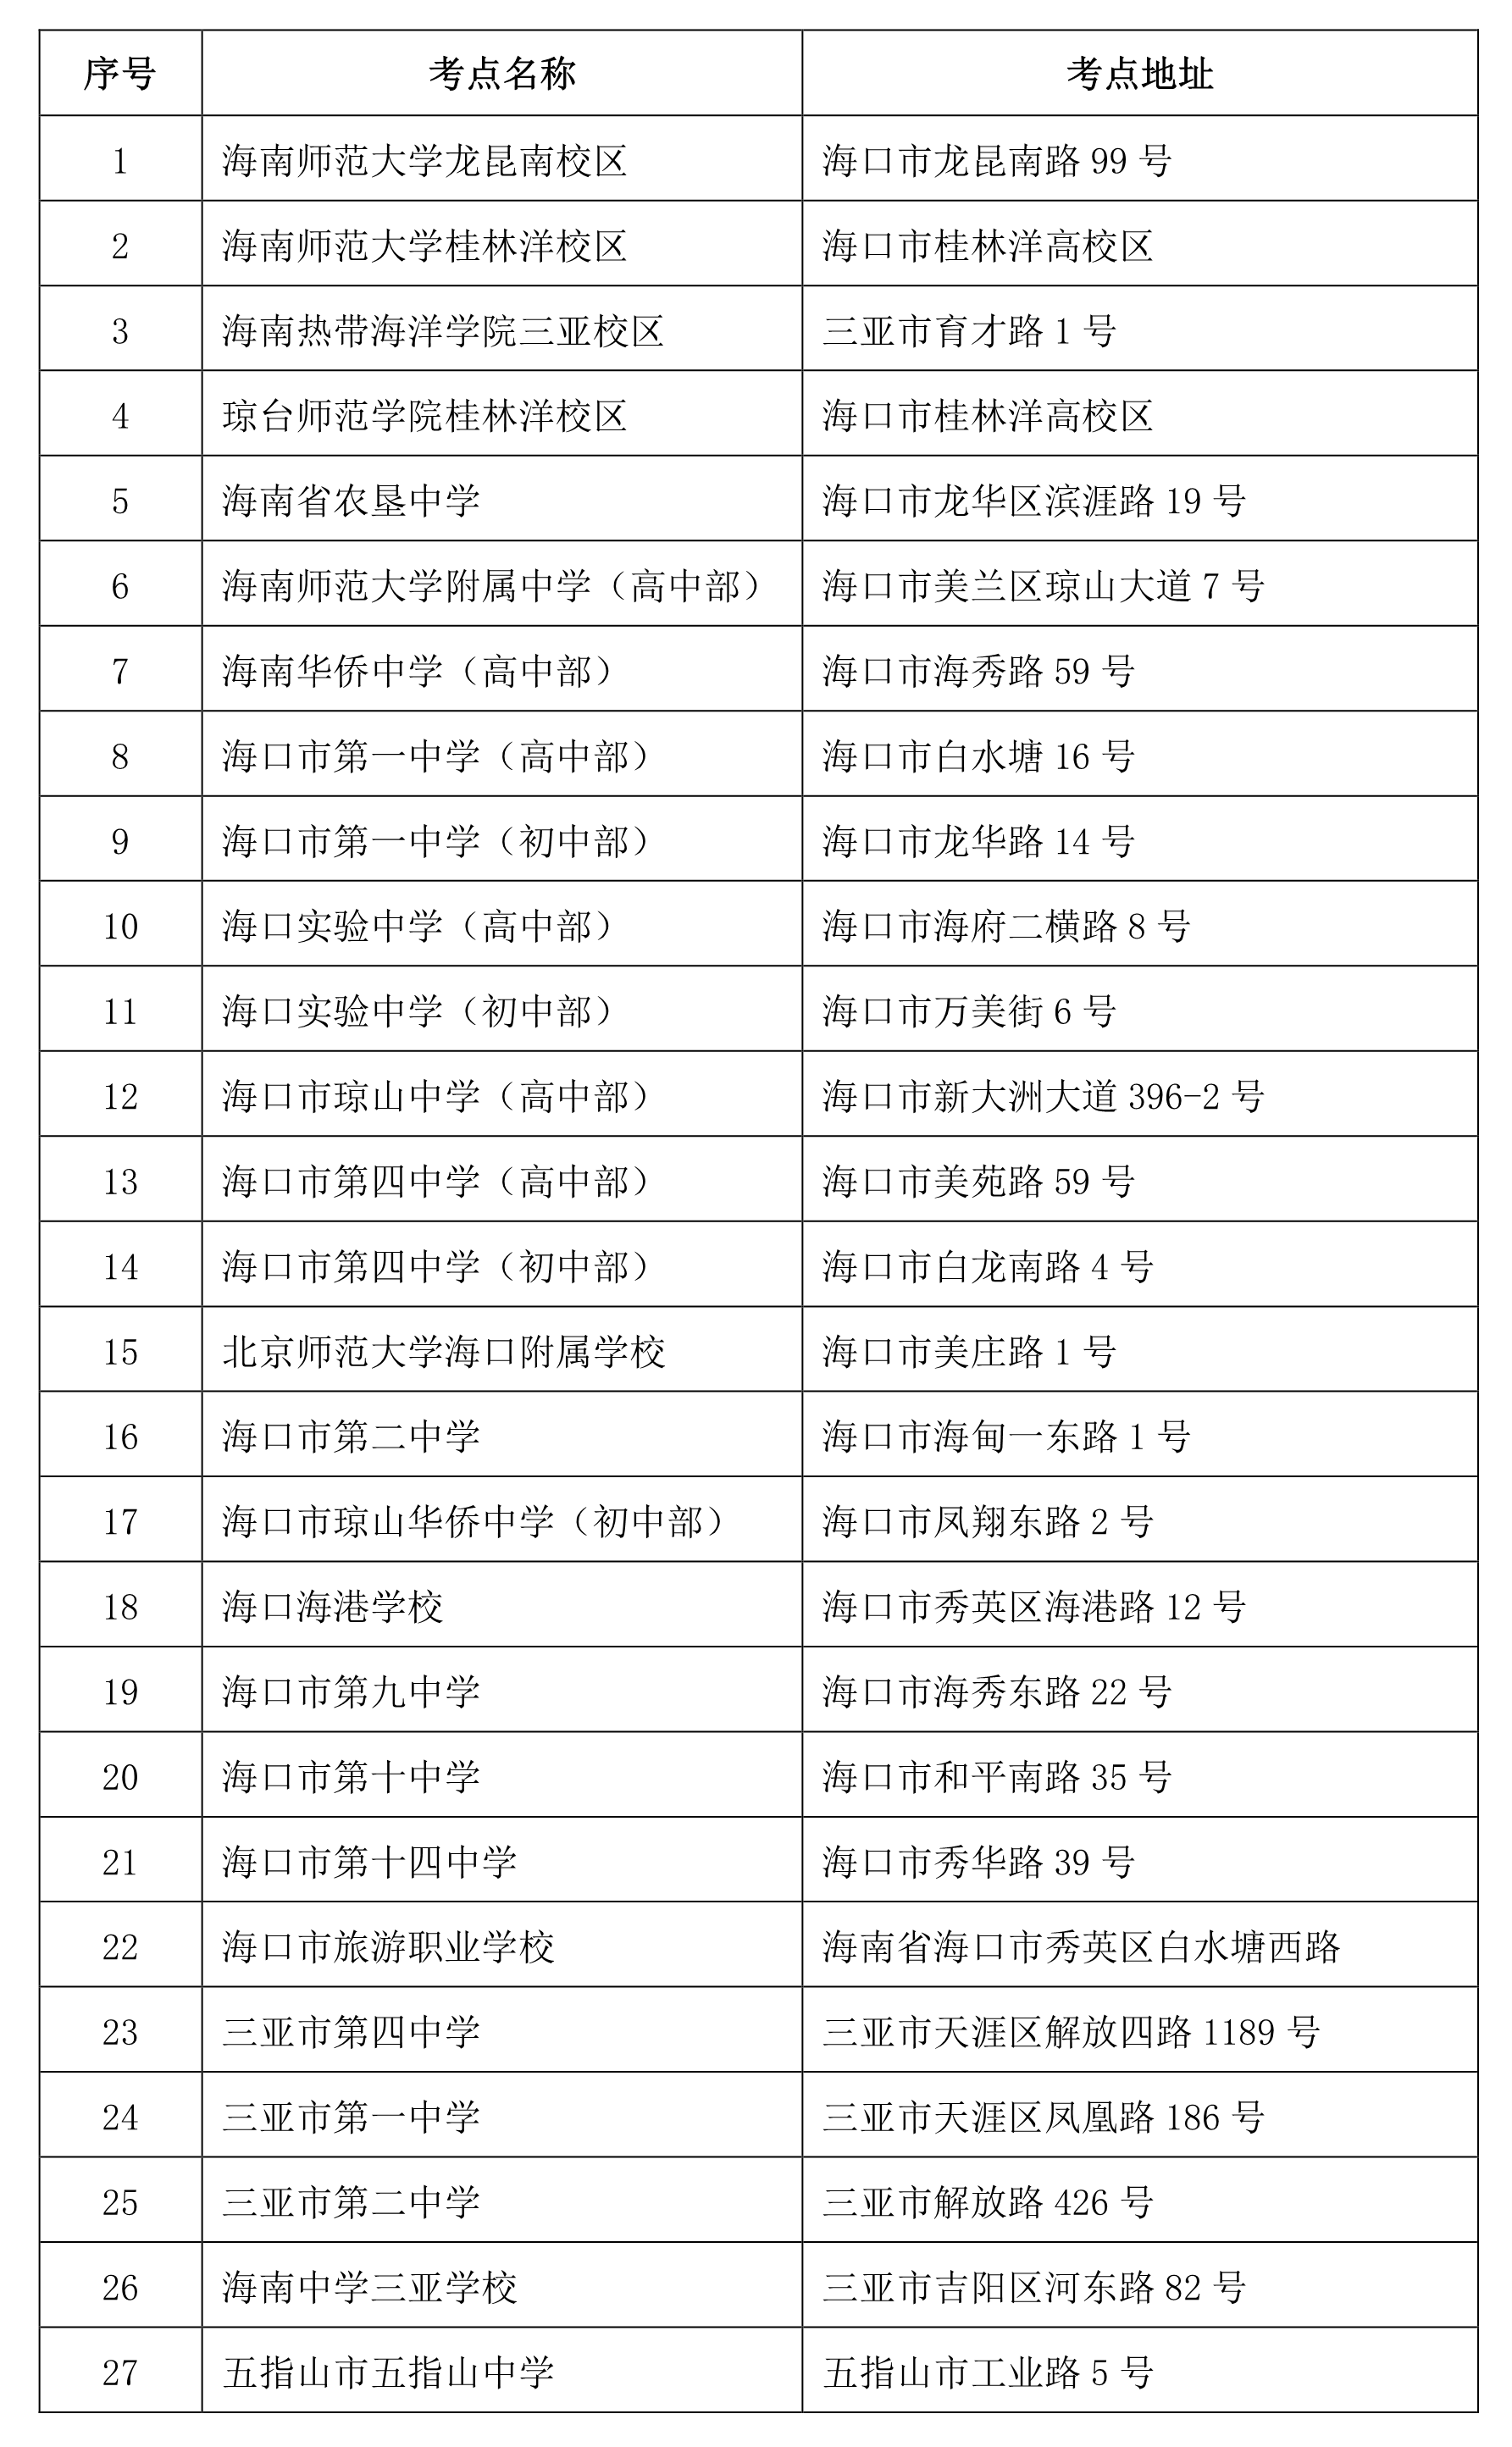 2020年海南省中小学教师资格证考试通知